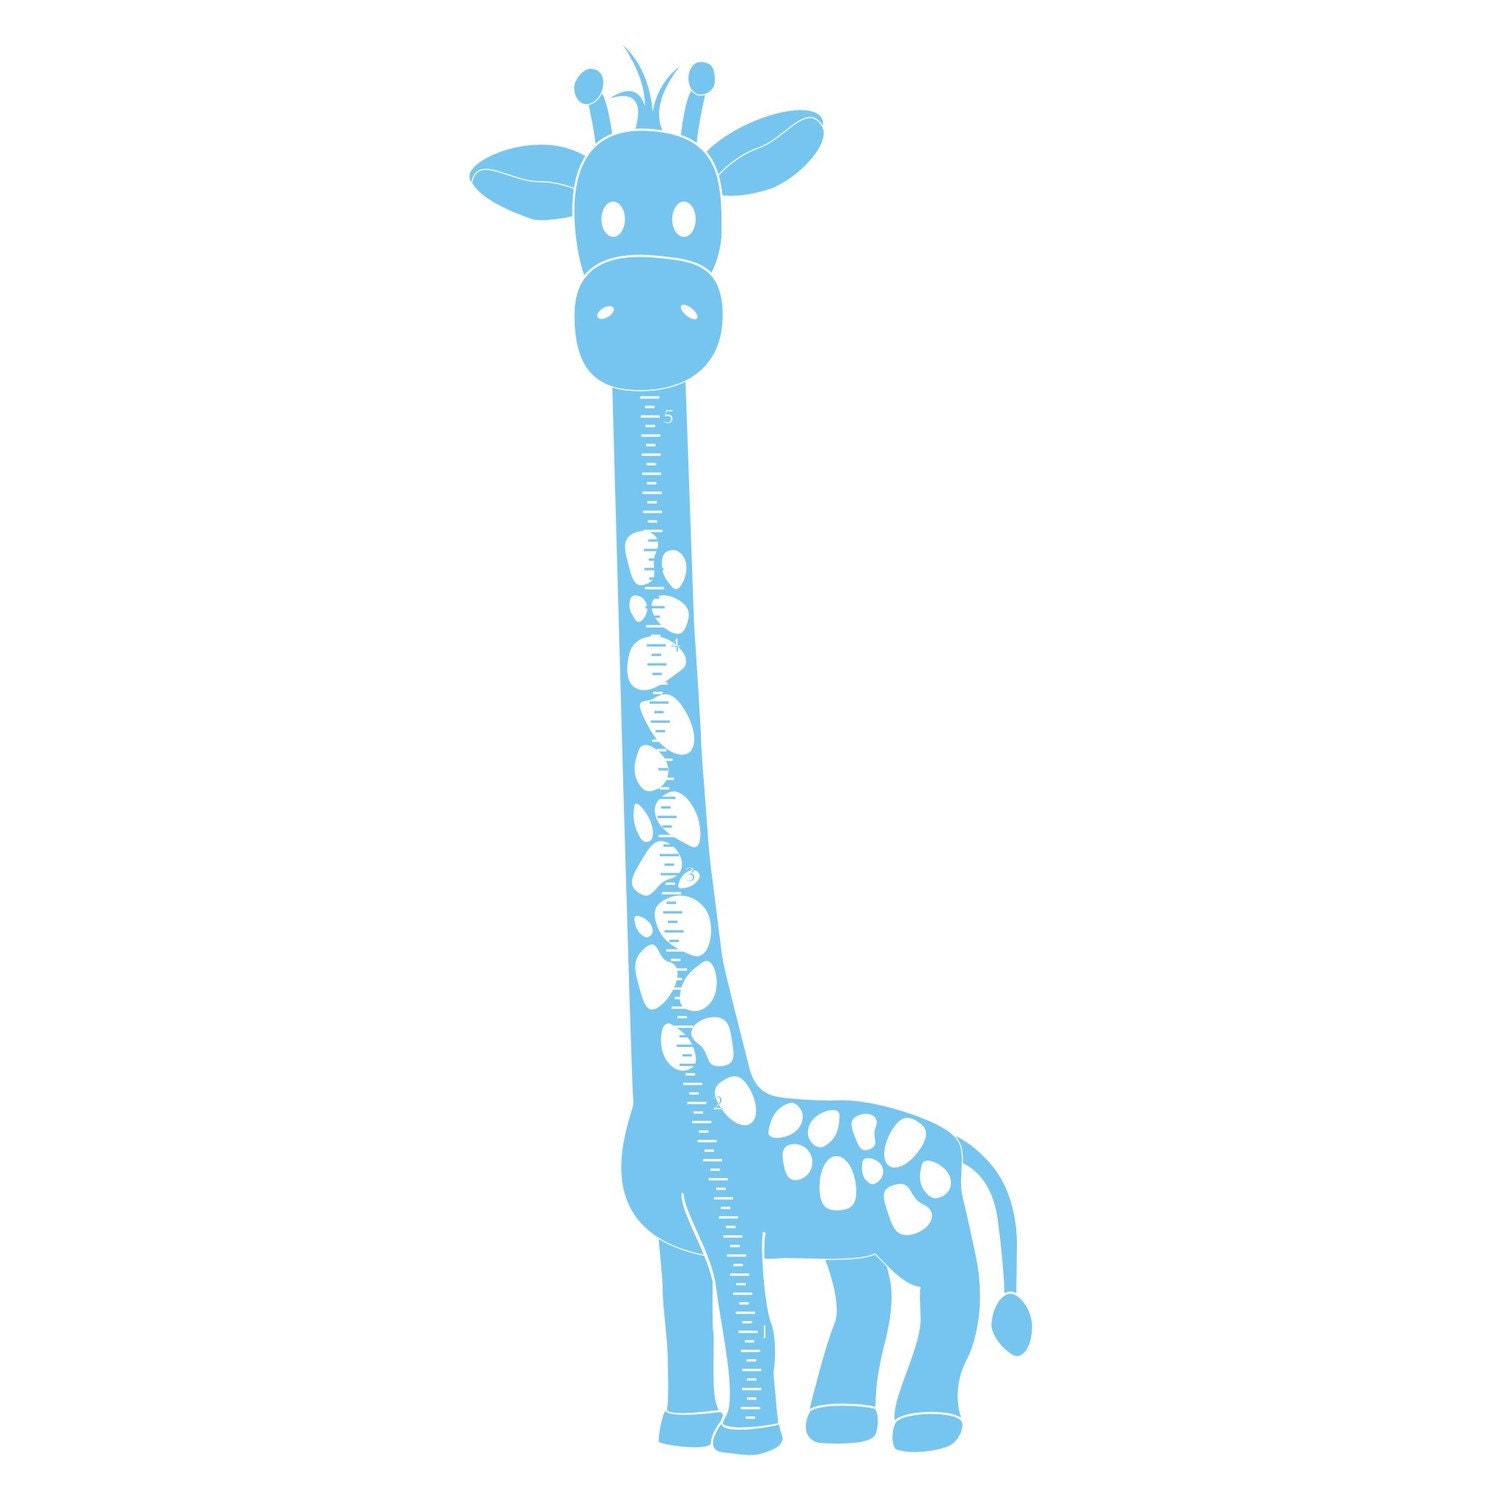 Huge Giraffe